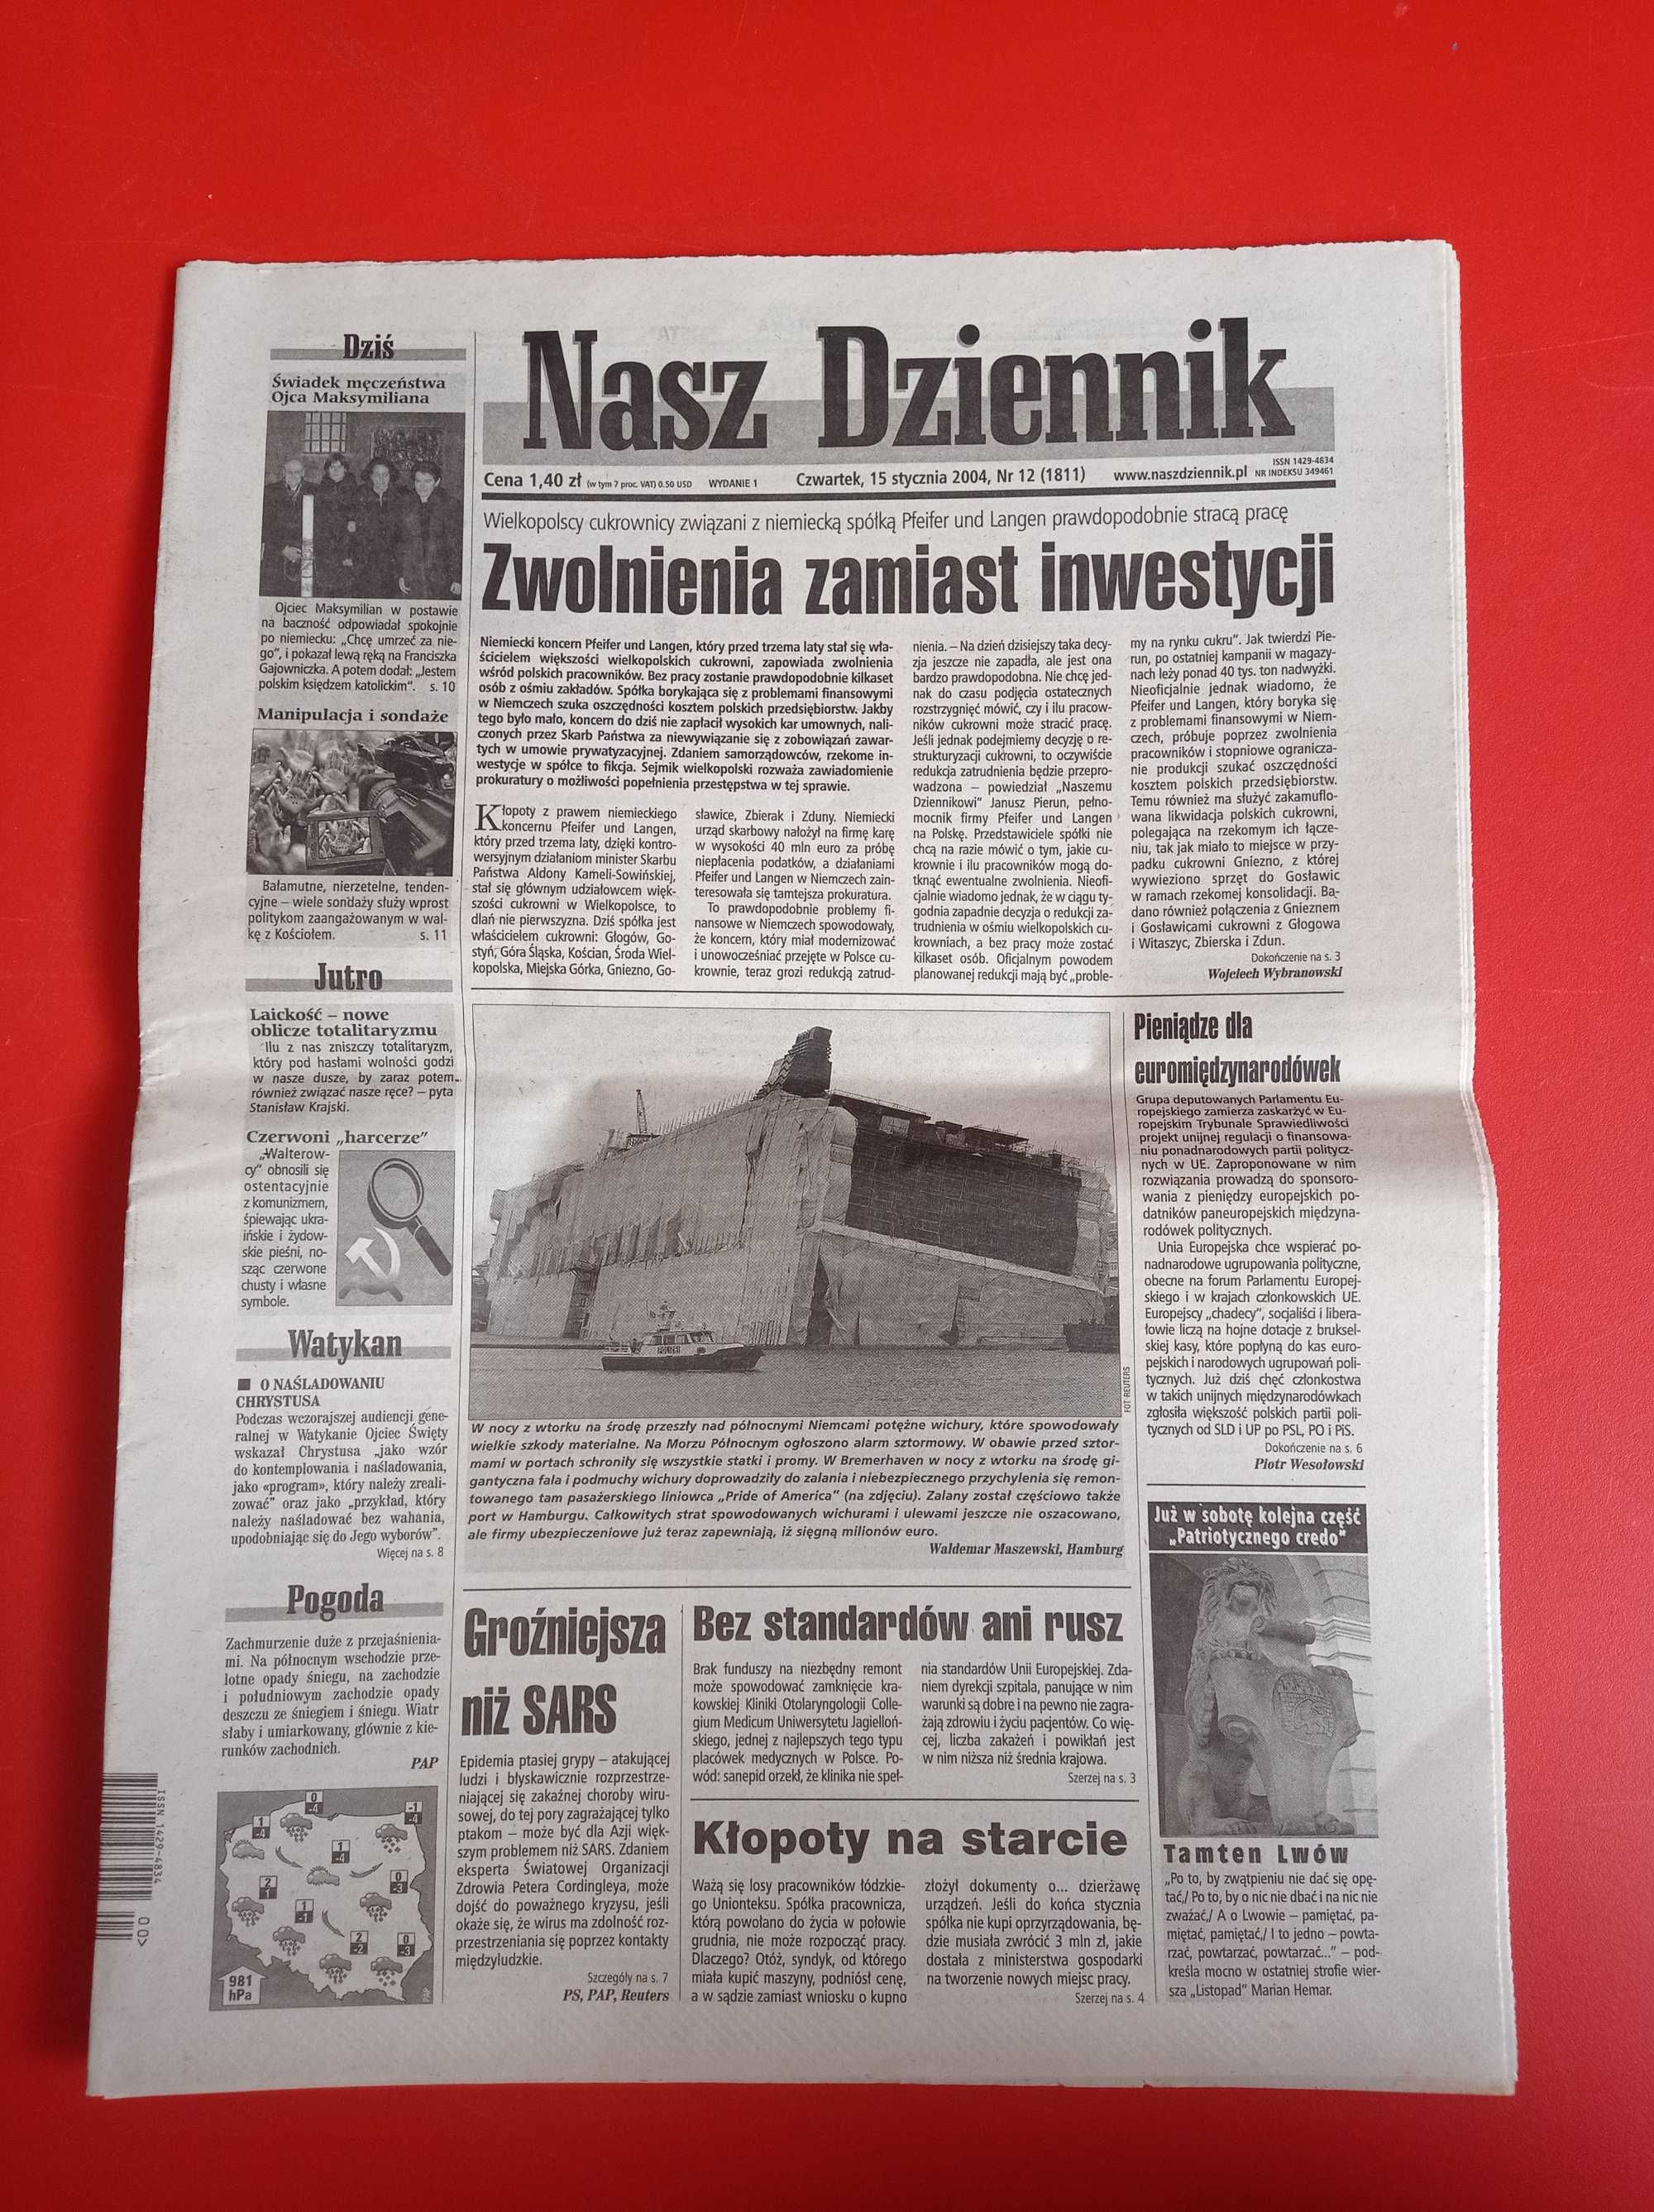 Nasz Dziennik, nr 12/2004, 15 stycznia 2004